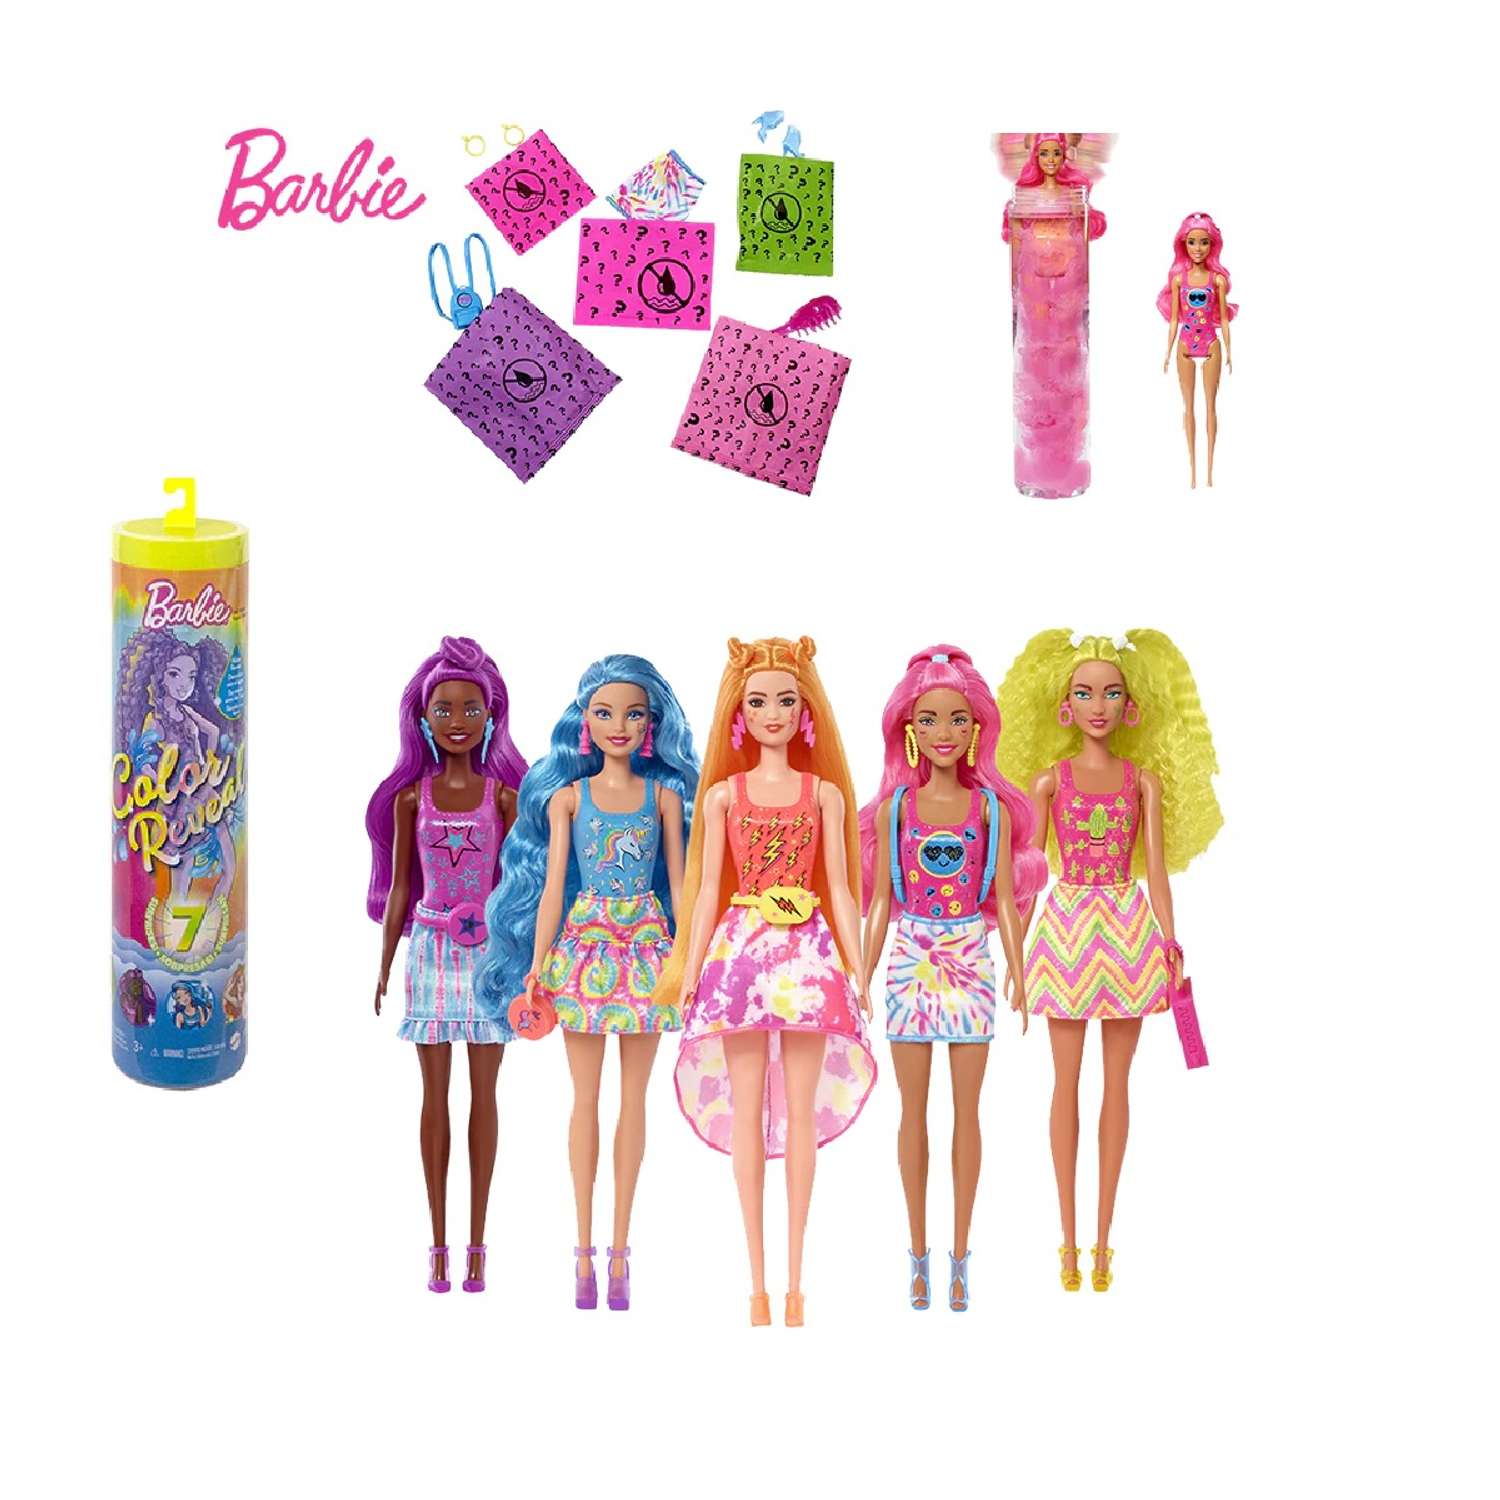 Кукла Barbie меняющая цвет в непрозрачной упаковке (Сюрприз) HDN72 HDN72 - фото 2